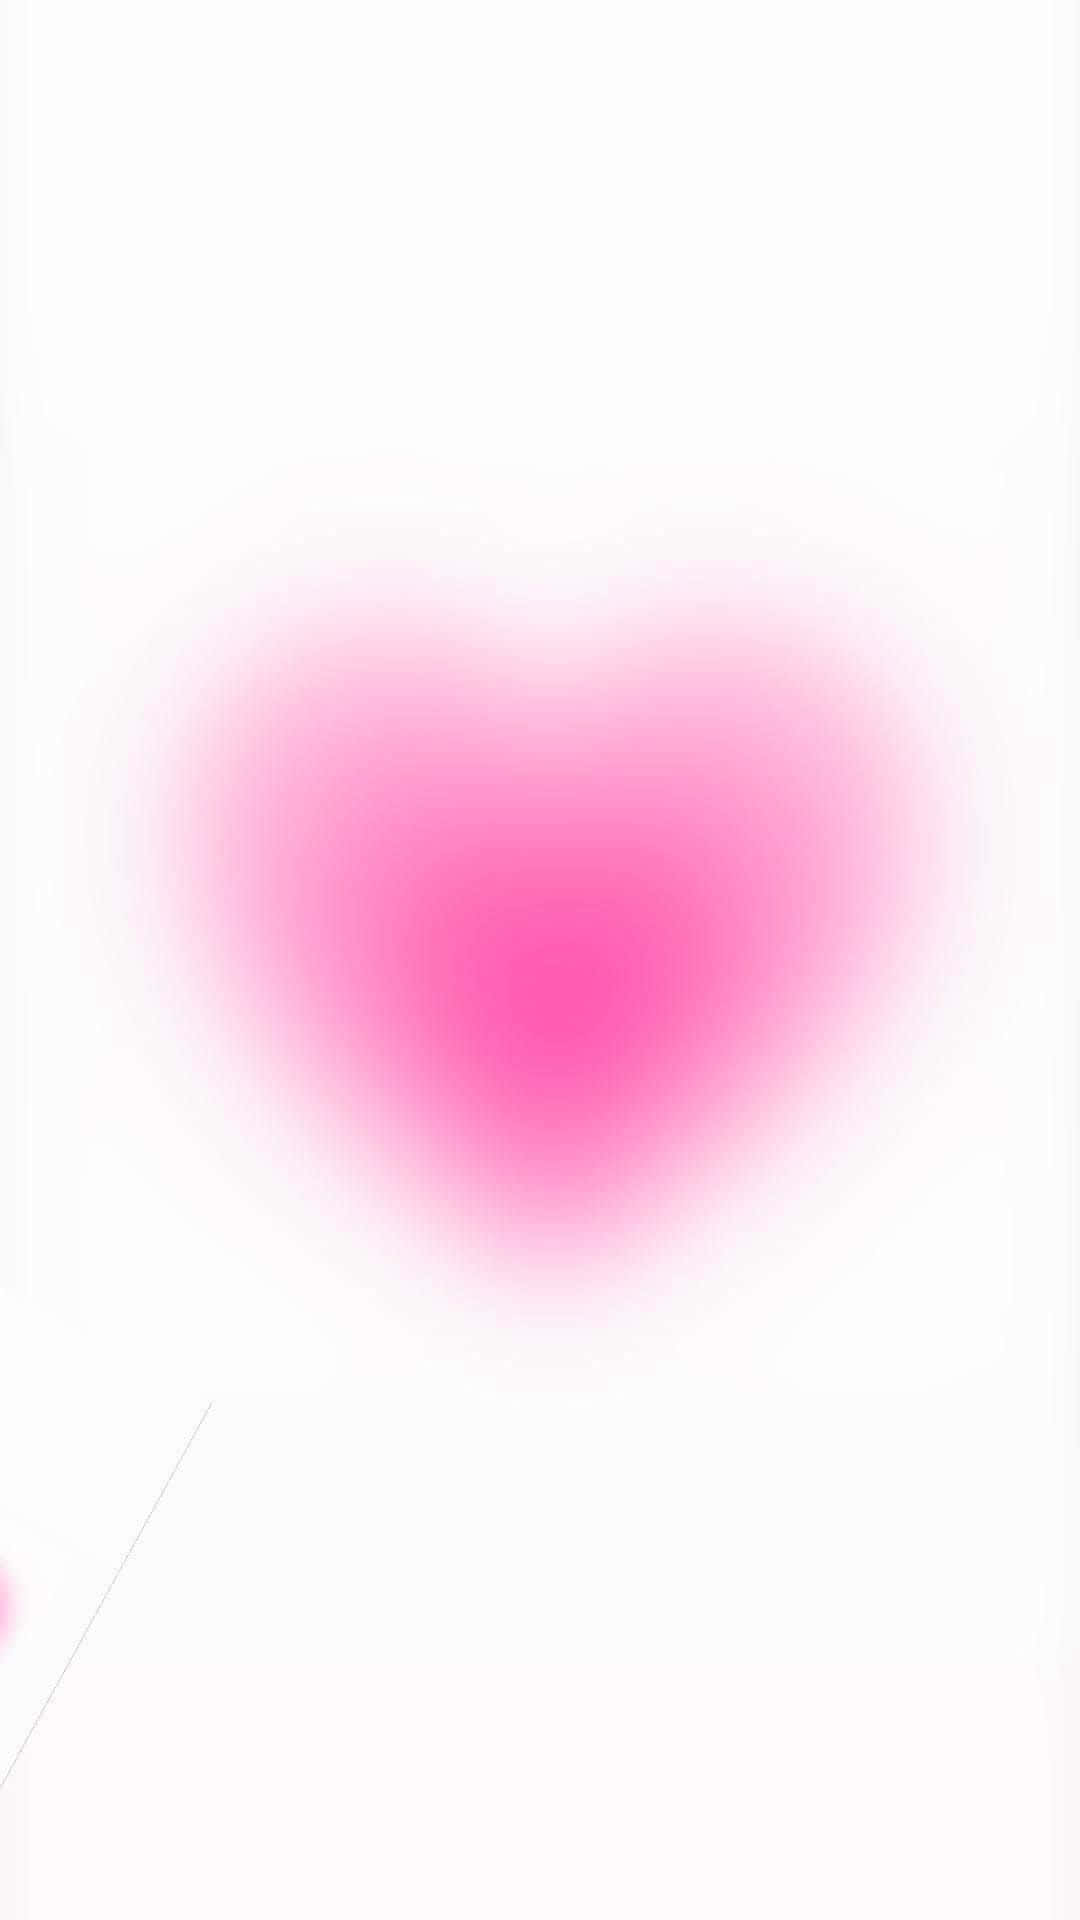 Abstract Pink Heart Blur.jpg Wallpaper